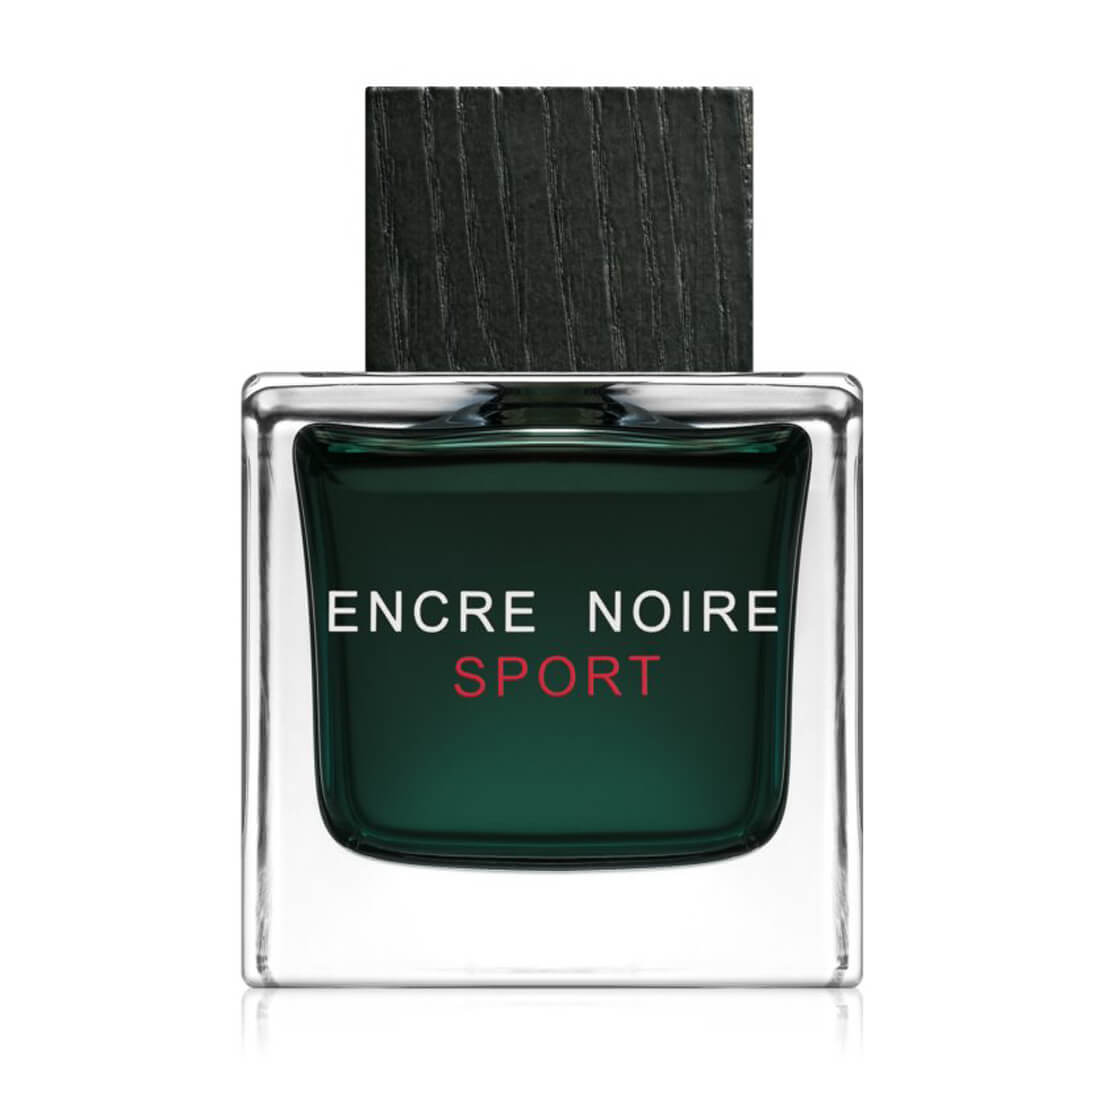 Lalique Encre Noire Sport Eau De Toilette For Men